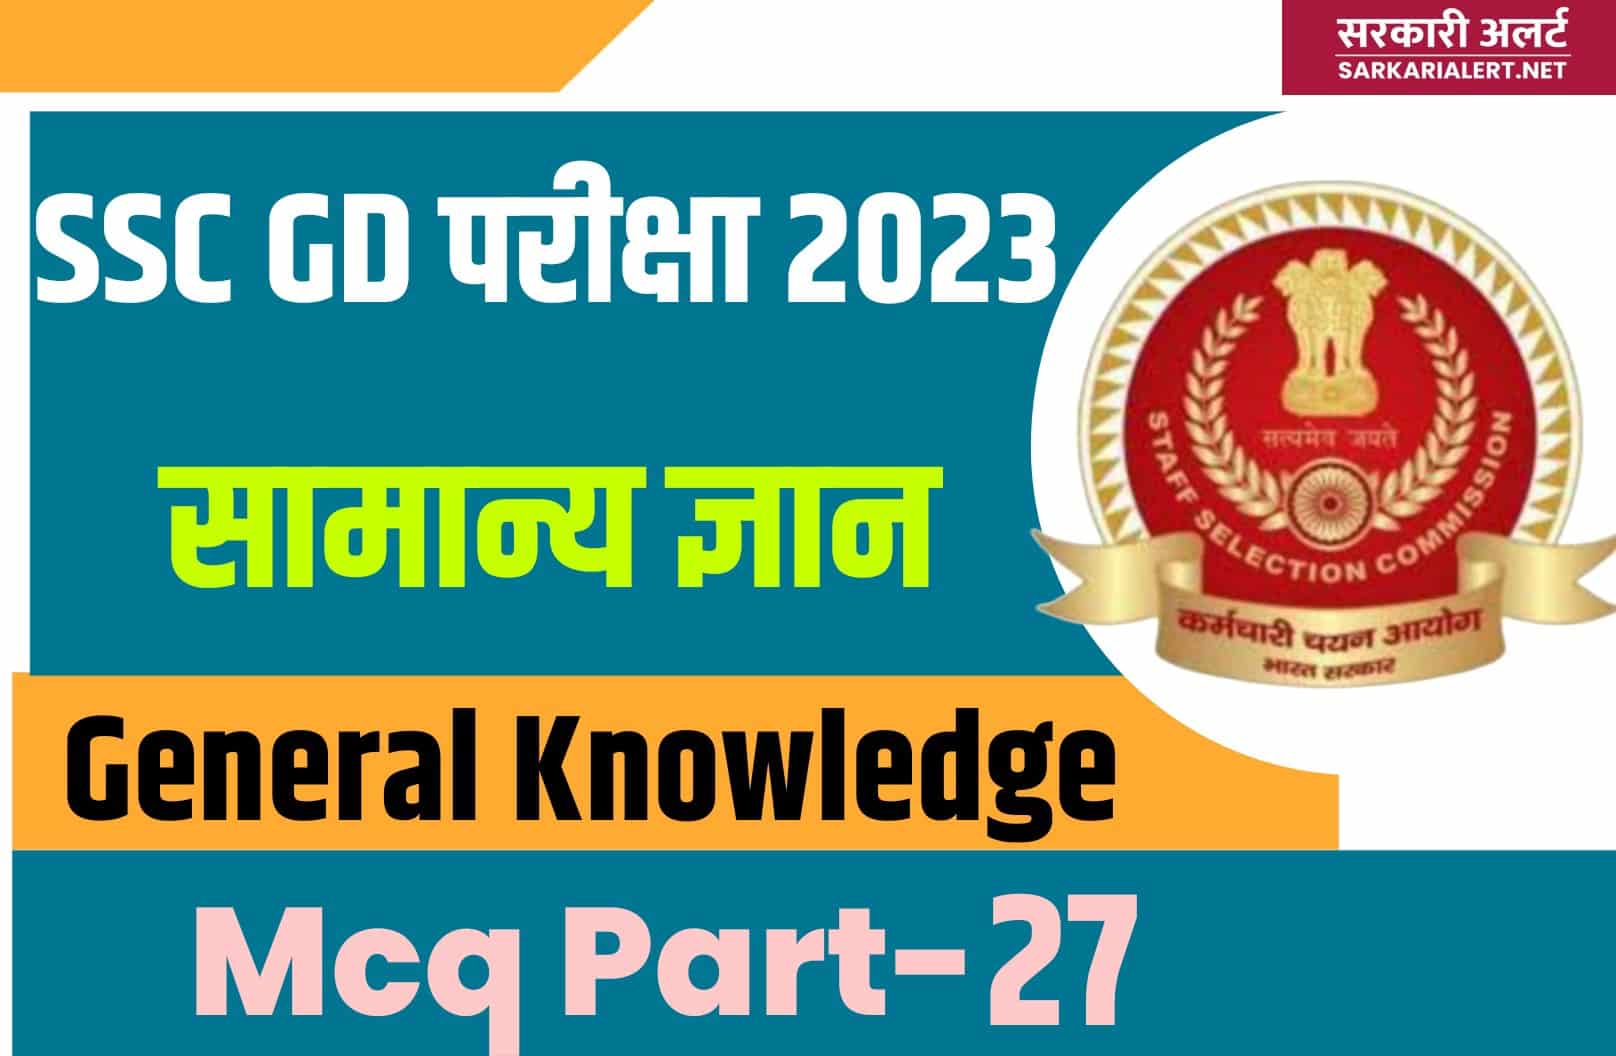 SSC GD Exam 2023 GK MCQ – 27 | सामान्य ज्ञान के मुख्य प्रश्नों का संग्रह